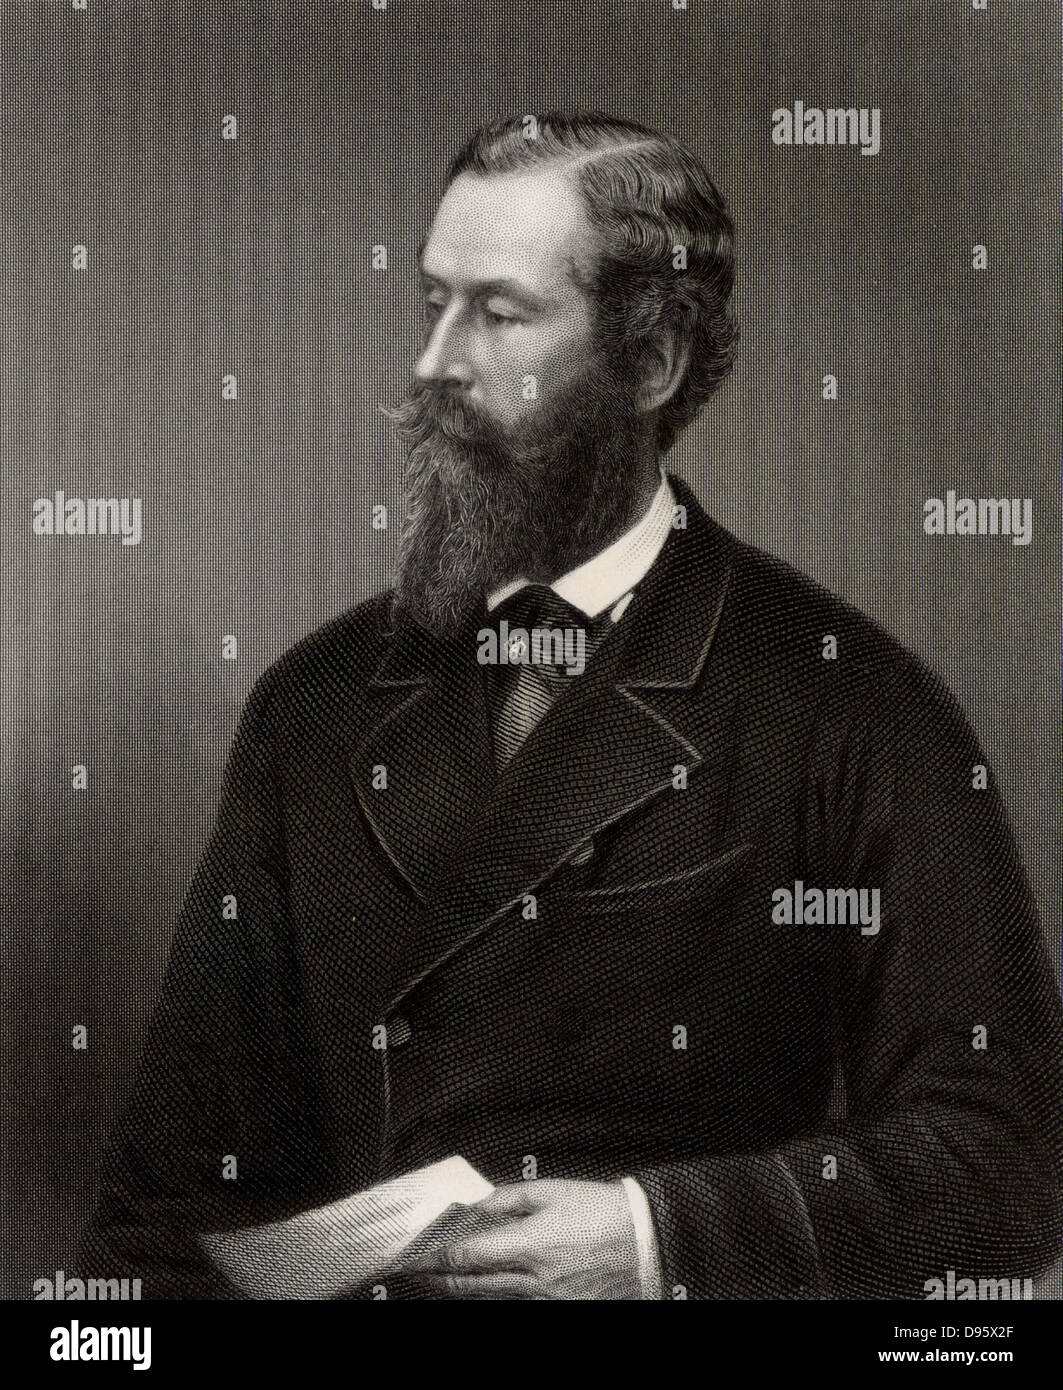 James Hamilton, 31e duc d'Abercorn (1811-1885), homme d'État conservateur anglais né Mayfair, Londres. Lord Lieutenant d'Irlande (1866-1868, 1874-1876). Marquis d'Abercorn (1818-1885), Duc d'Abercorn (1868-1885). La gravure. Banque D'Images